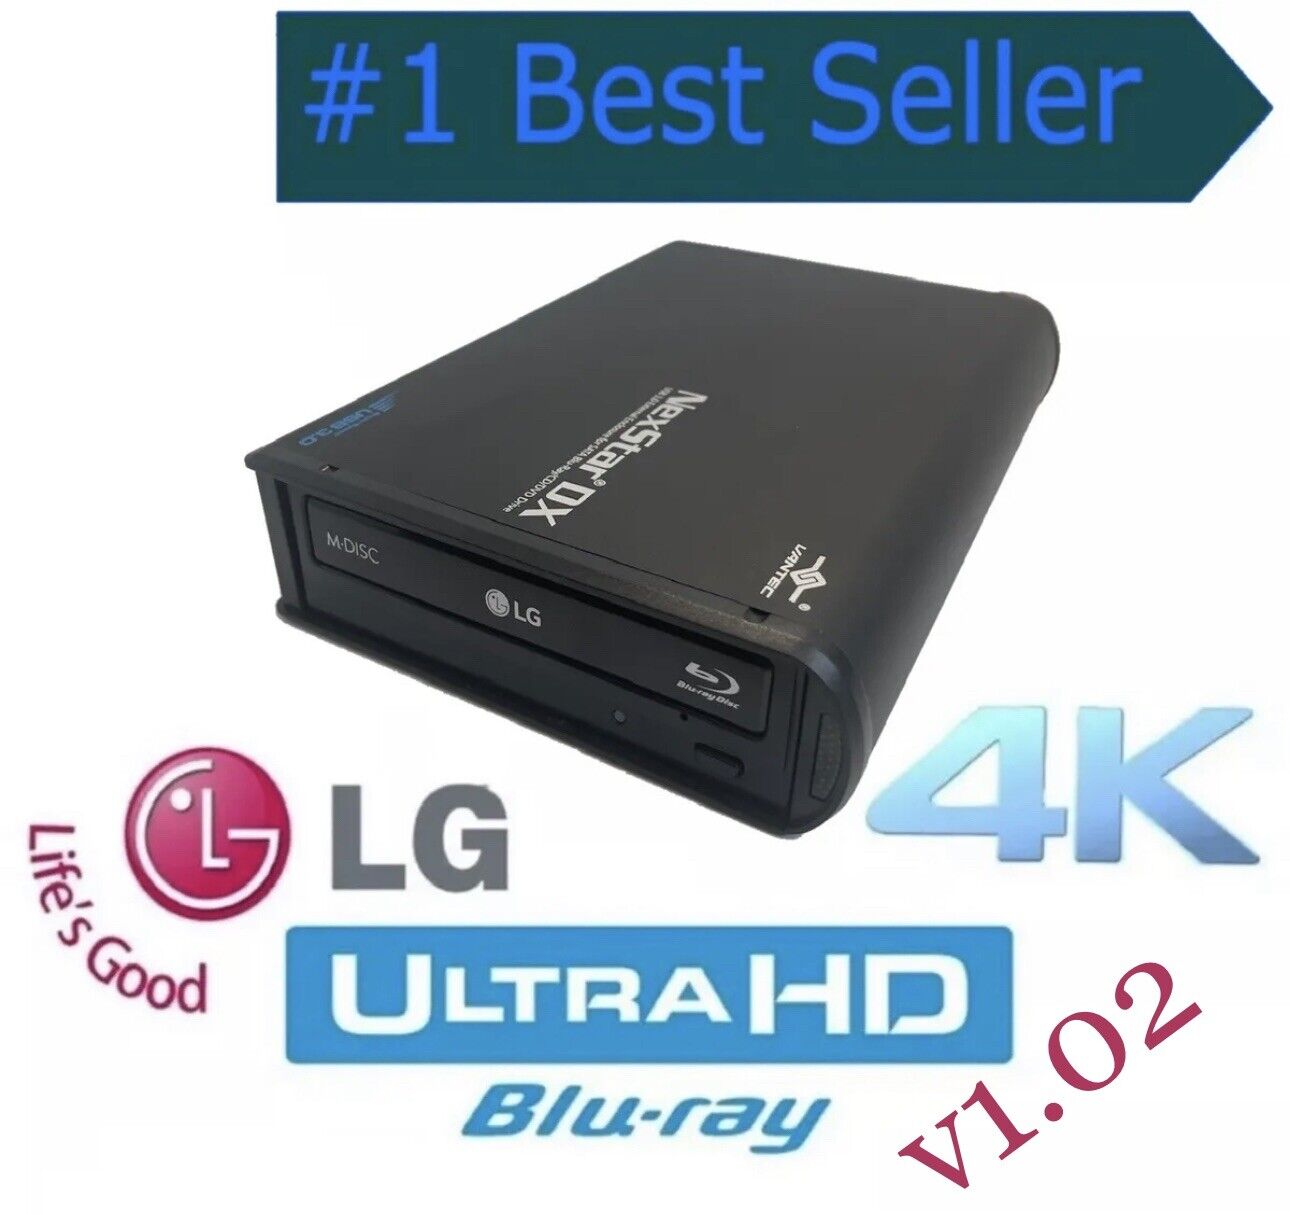 External LG WH14NS40  4K ULTRA HD Blu-ray Drive, UHD Friendly FW v1.02